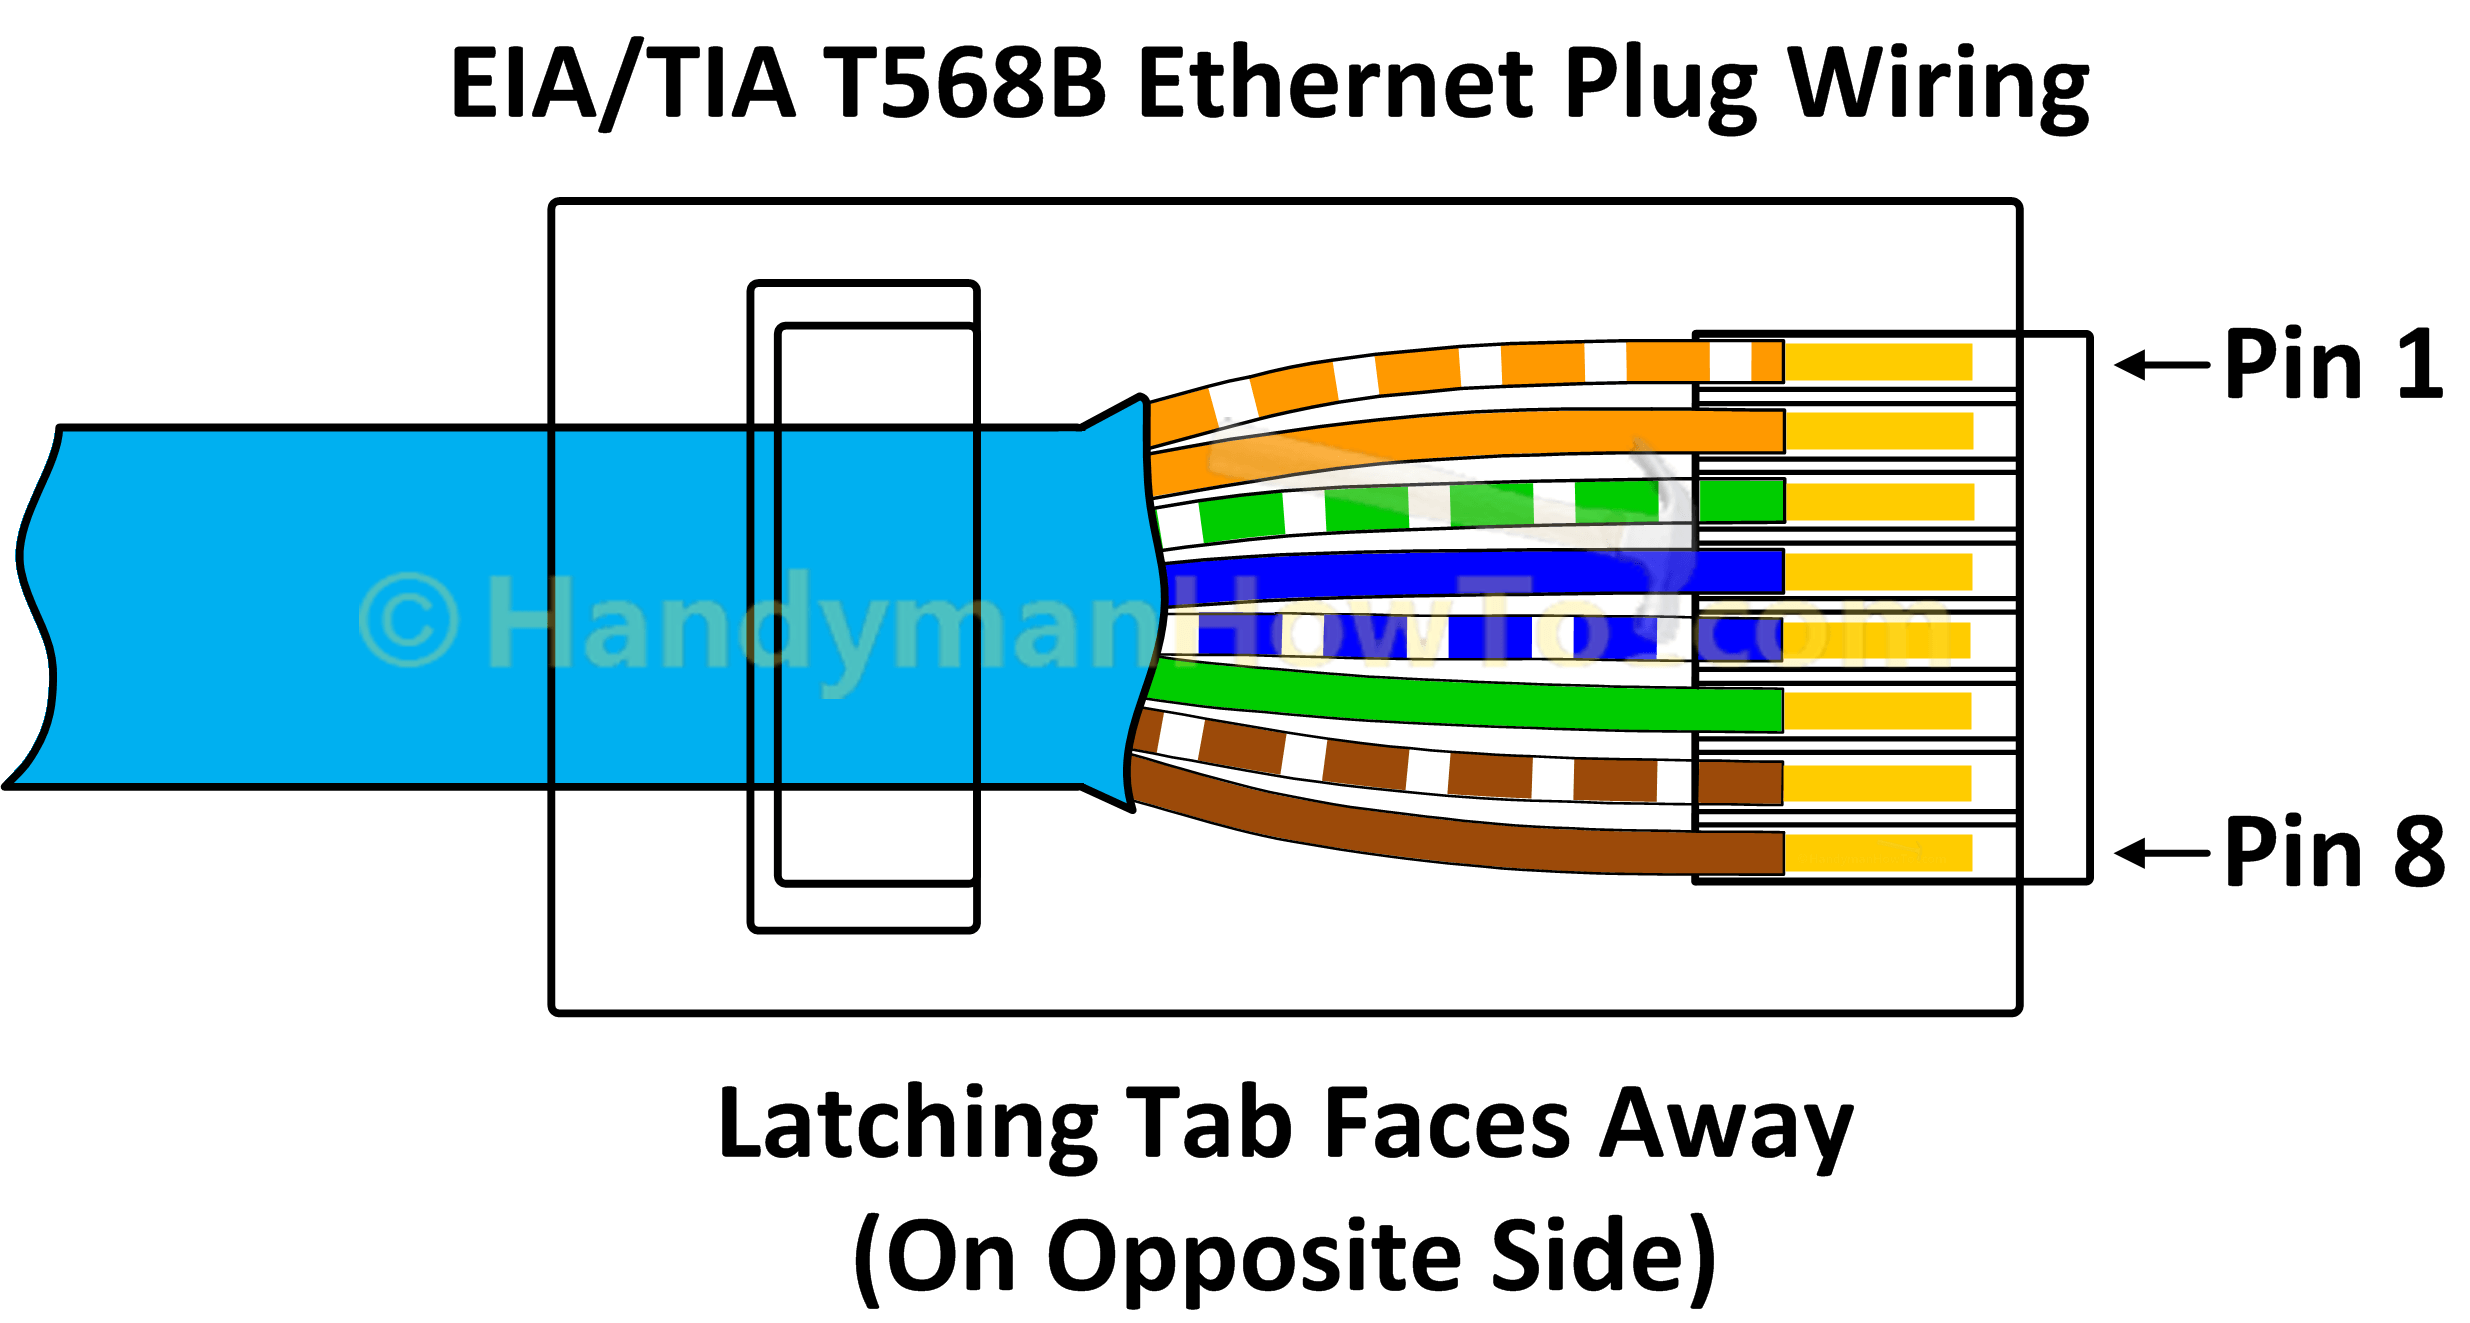 How to Wire a Cat6 RJ45 Ethernet Plug - HandymanHowto.com